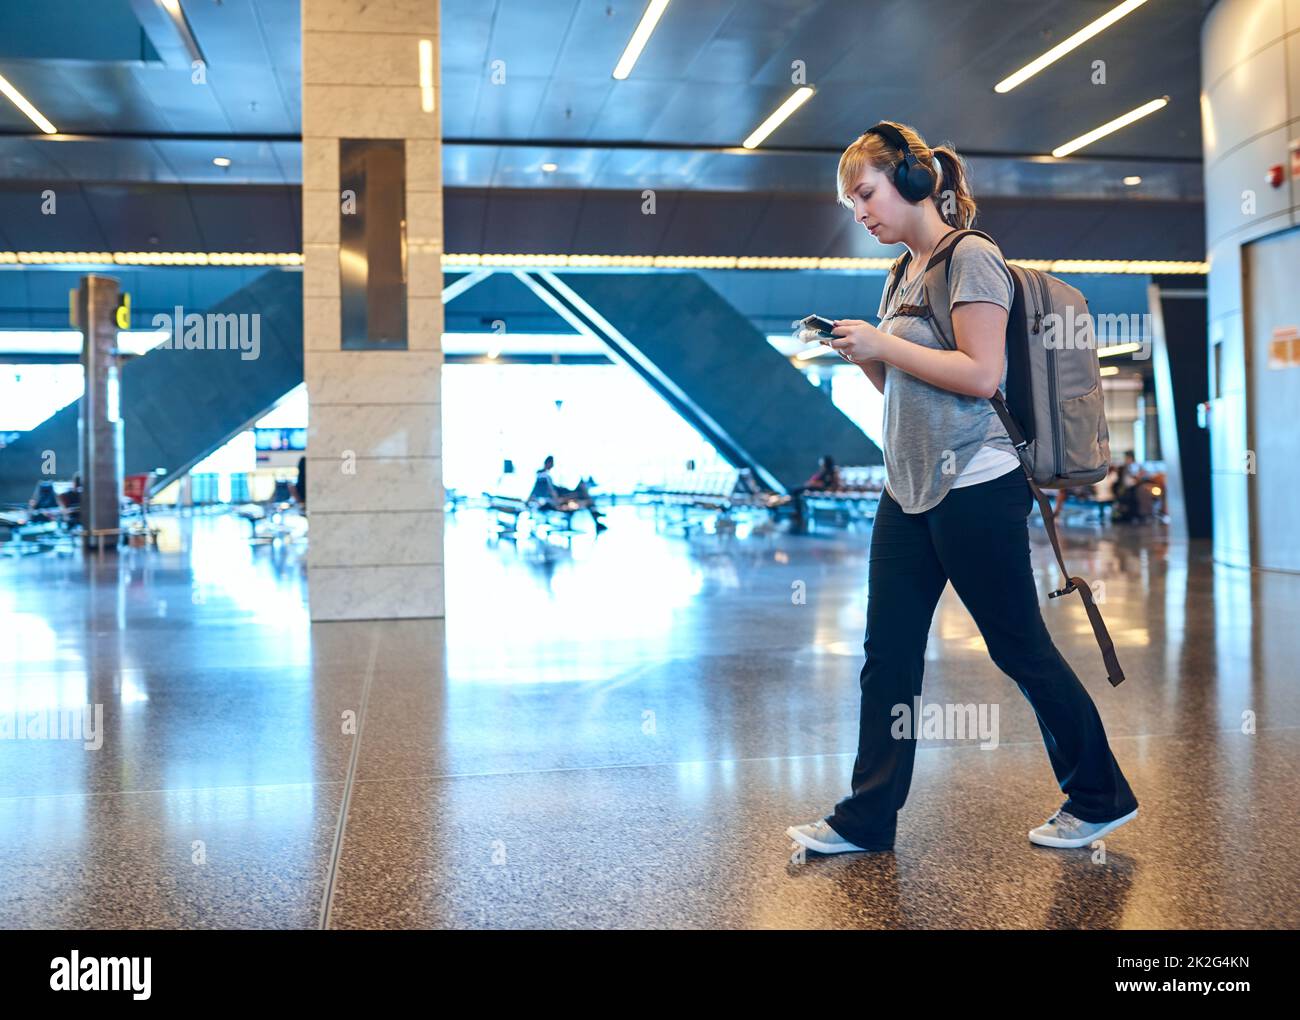 Wir gingen zur Abflughalle. In voller Länge eine attraktive junge Frau, die einen Text sendet, während sie durch einen Flughafen läuft. Stockfoto